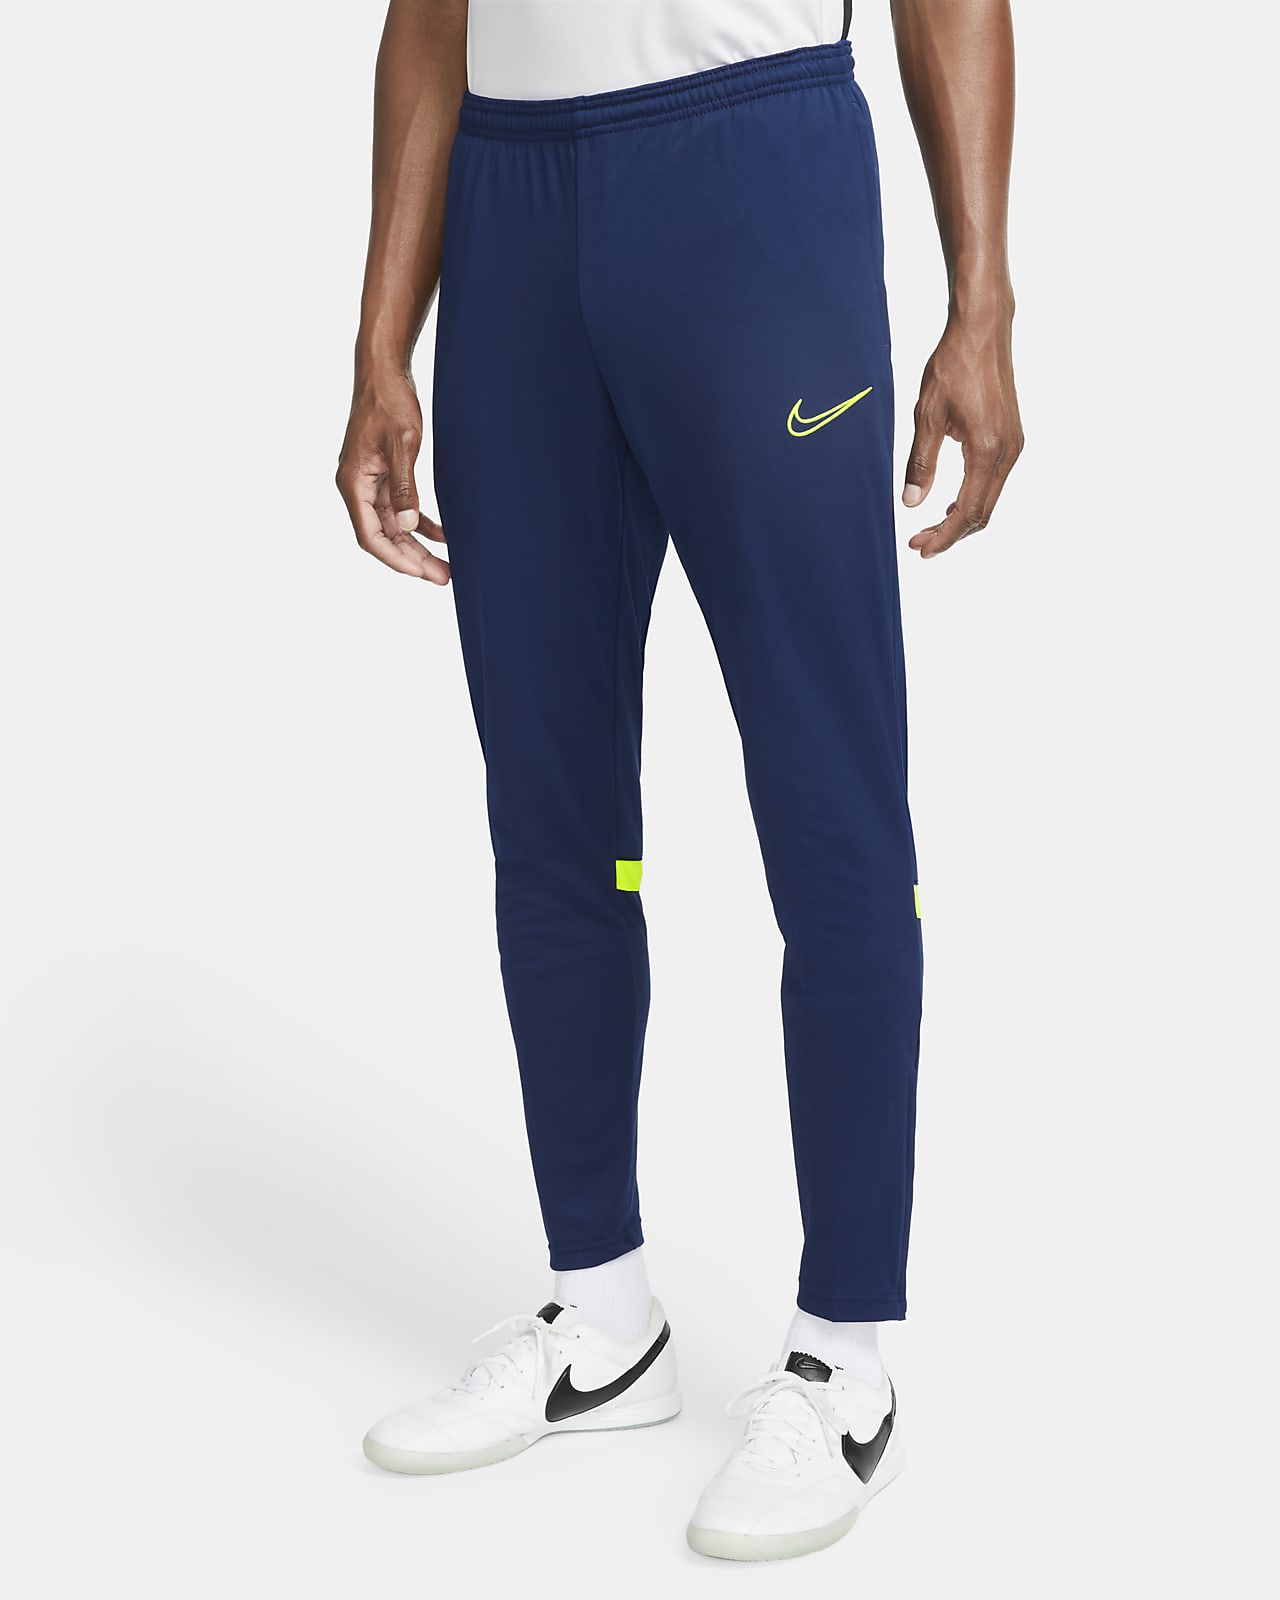 Pantalón deportivo Nike swoosh azul - Tus Camisetas